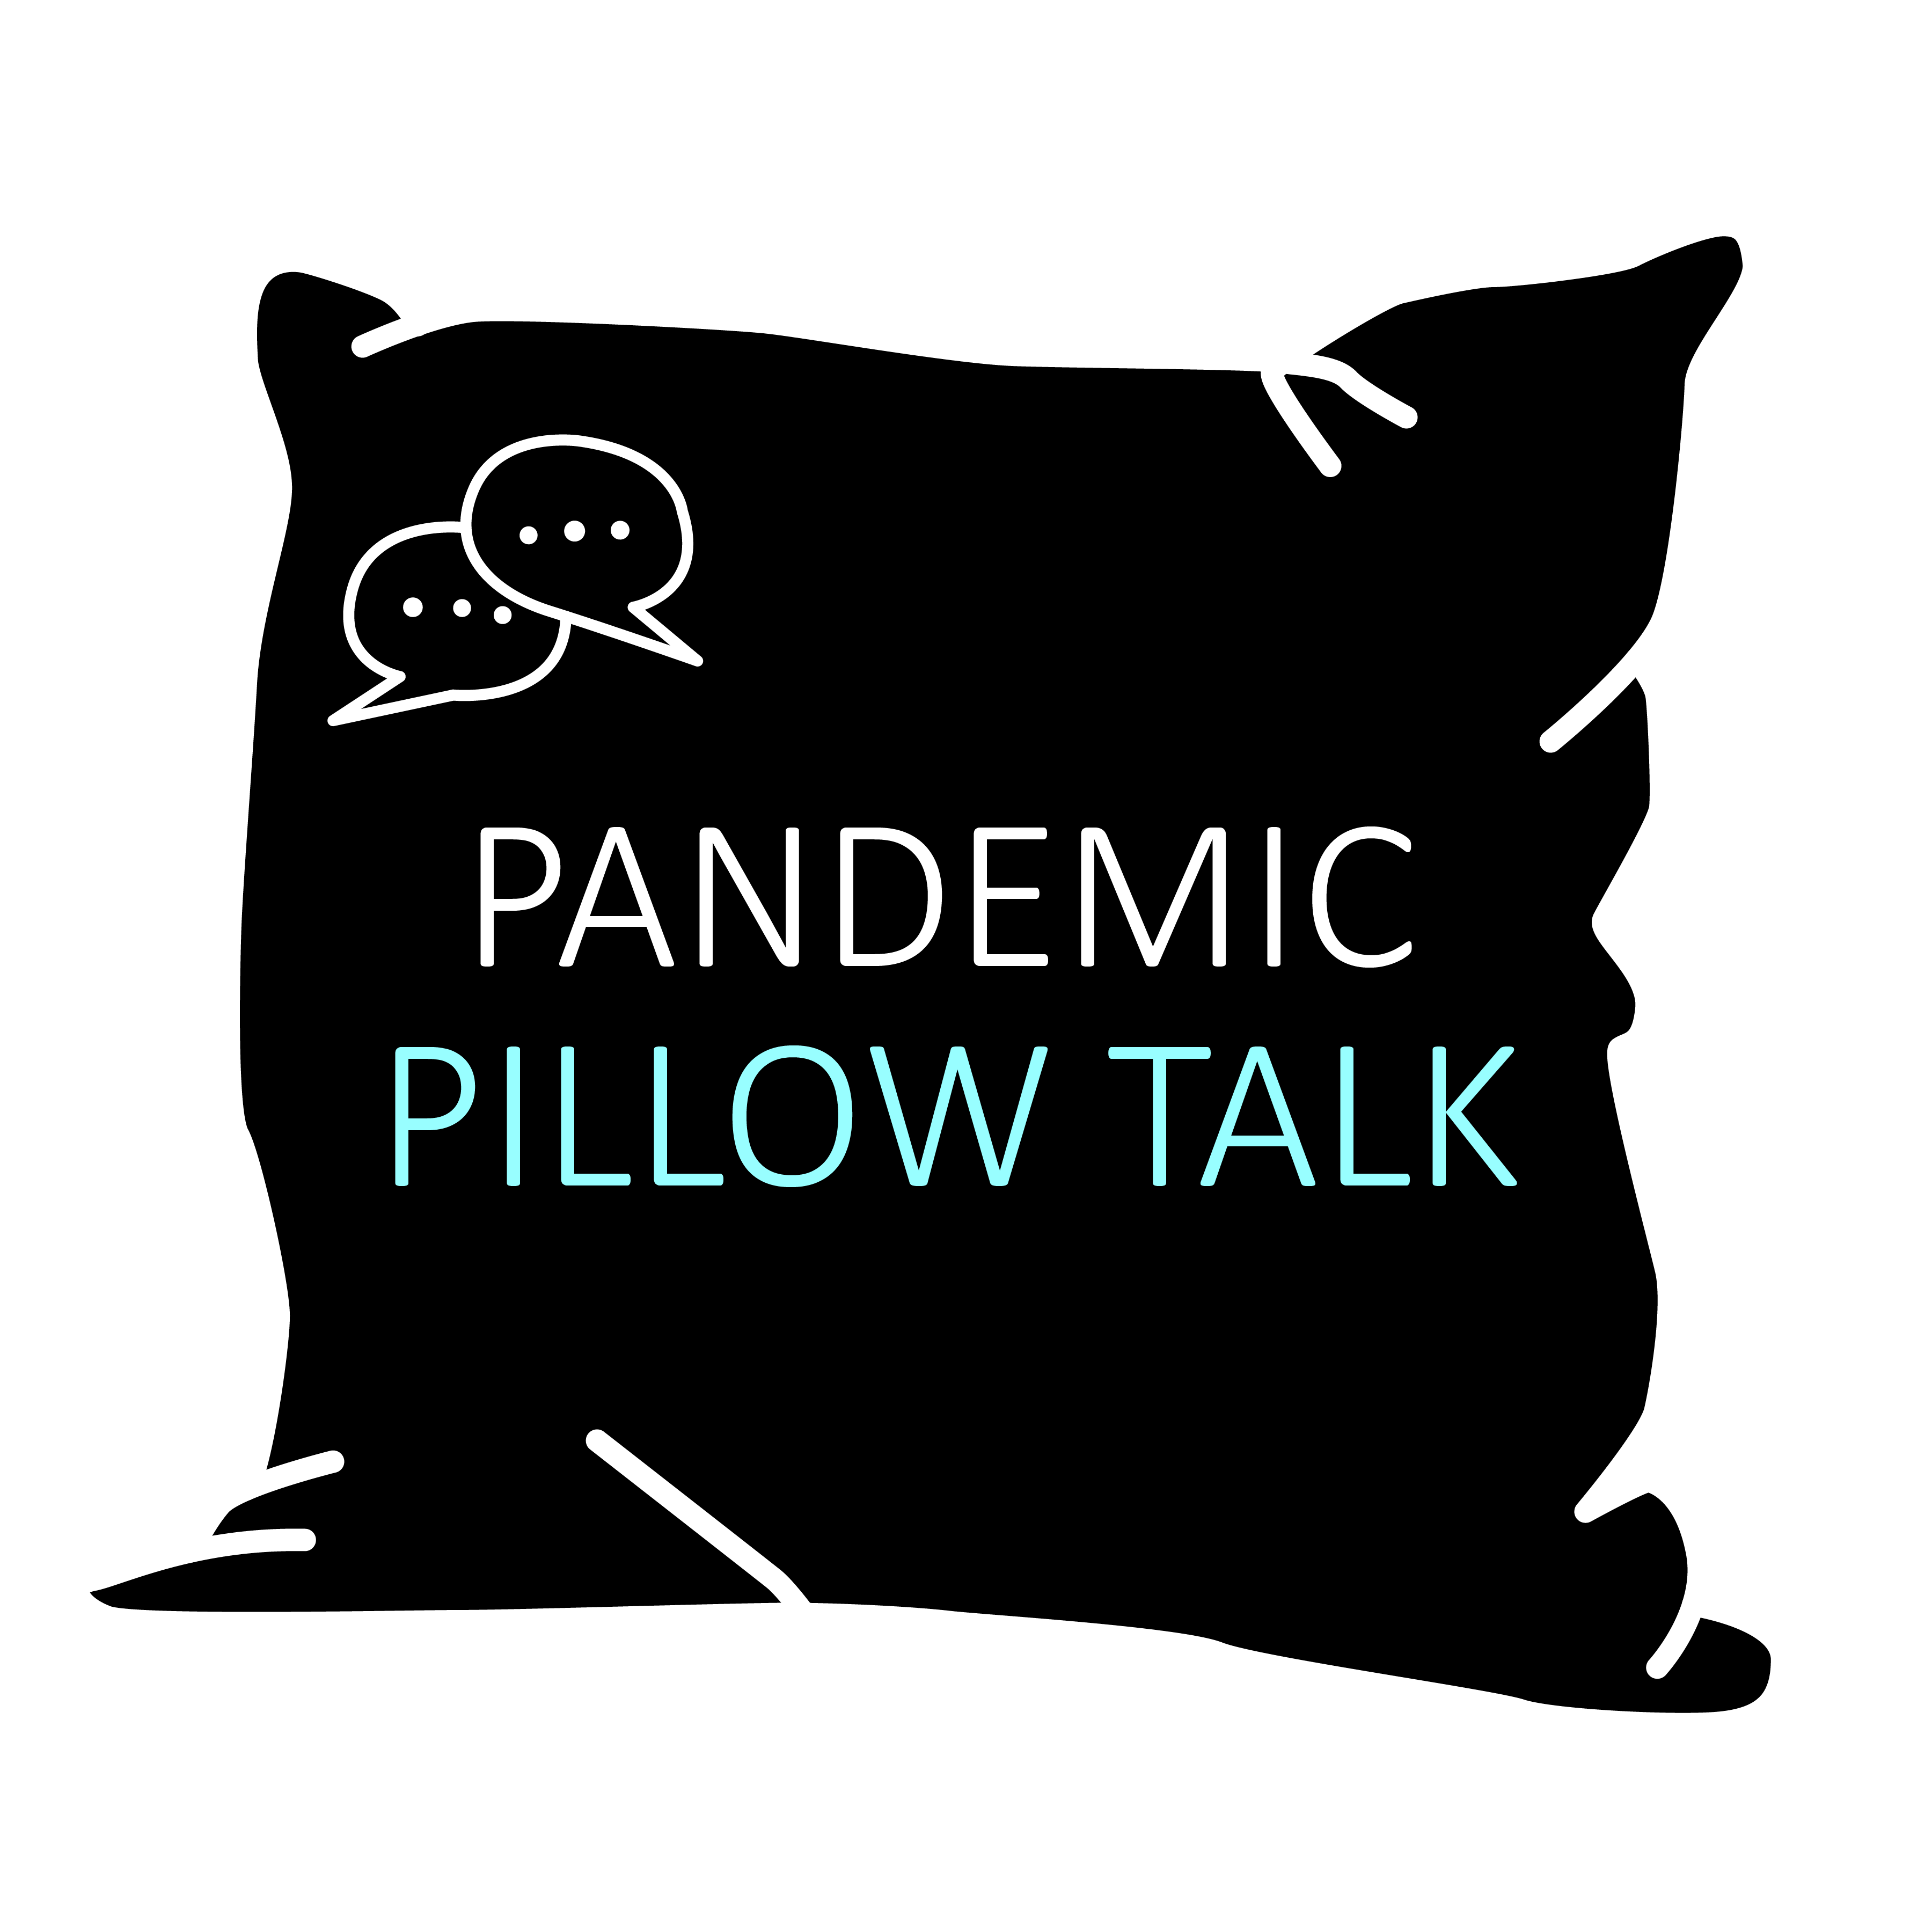 789-pandemic-pillow-talk-logo-transparent-bg.png